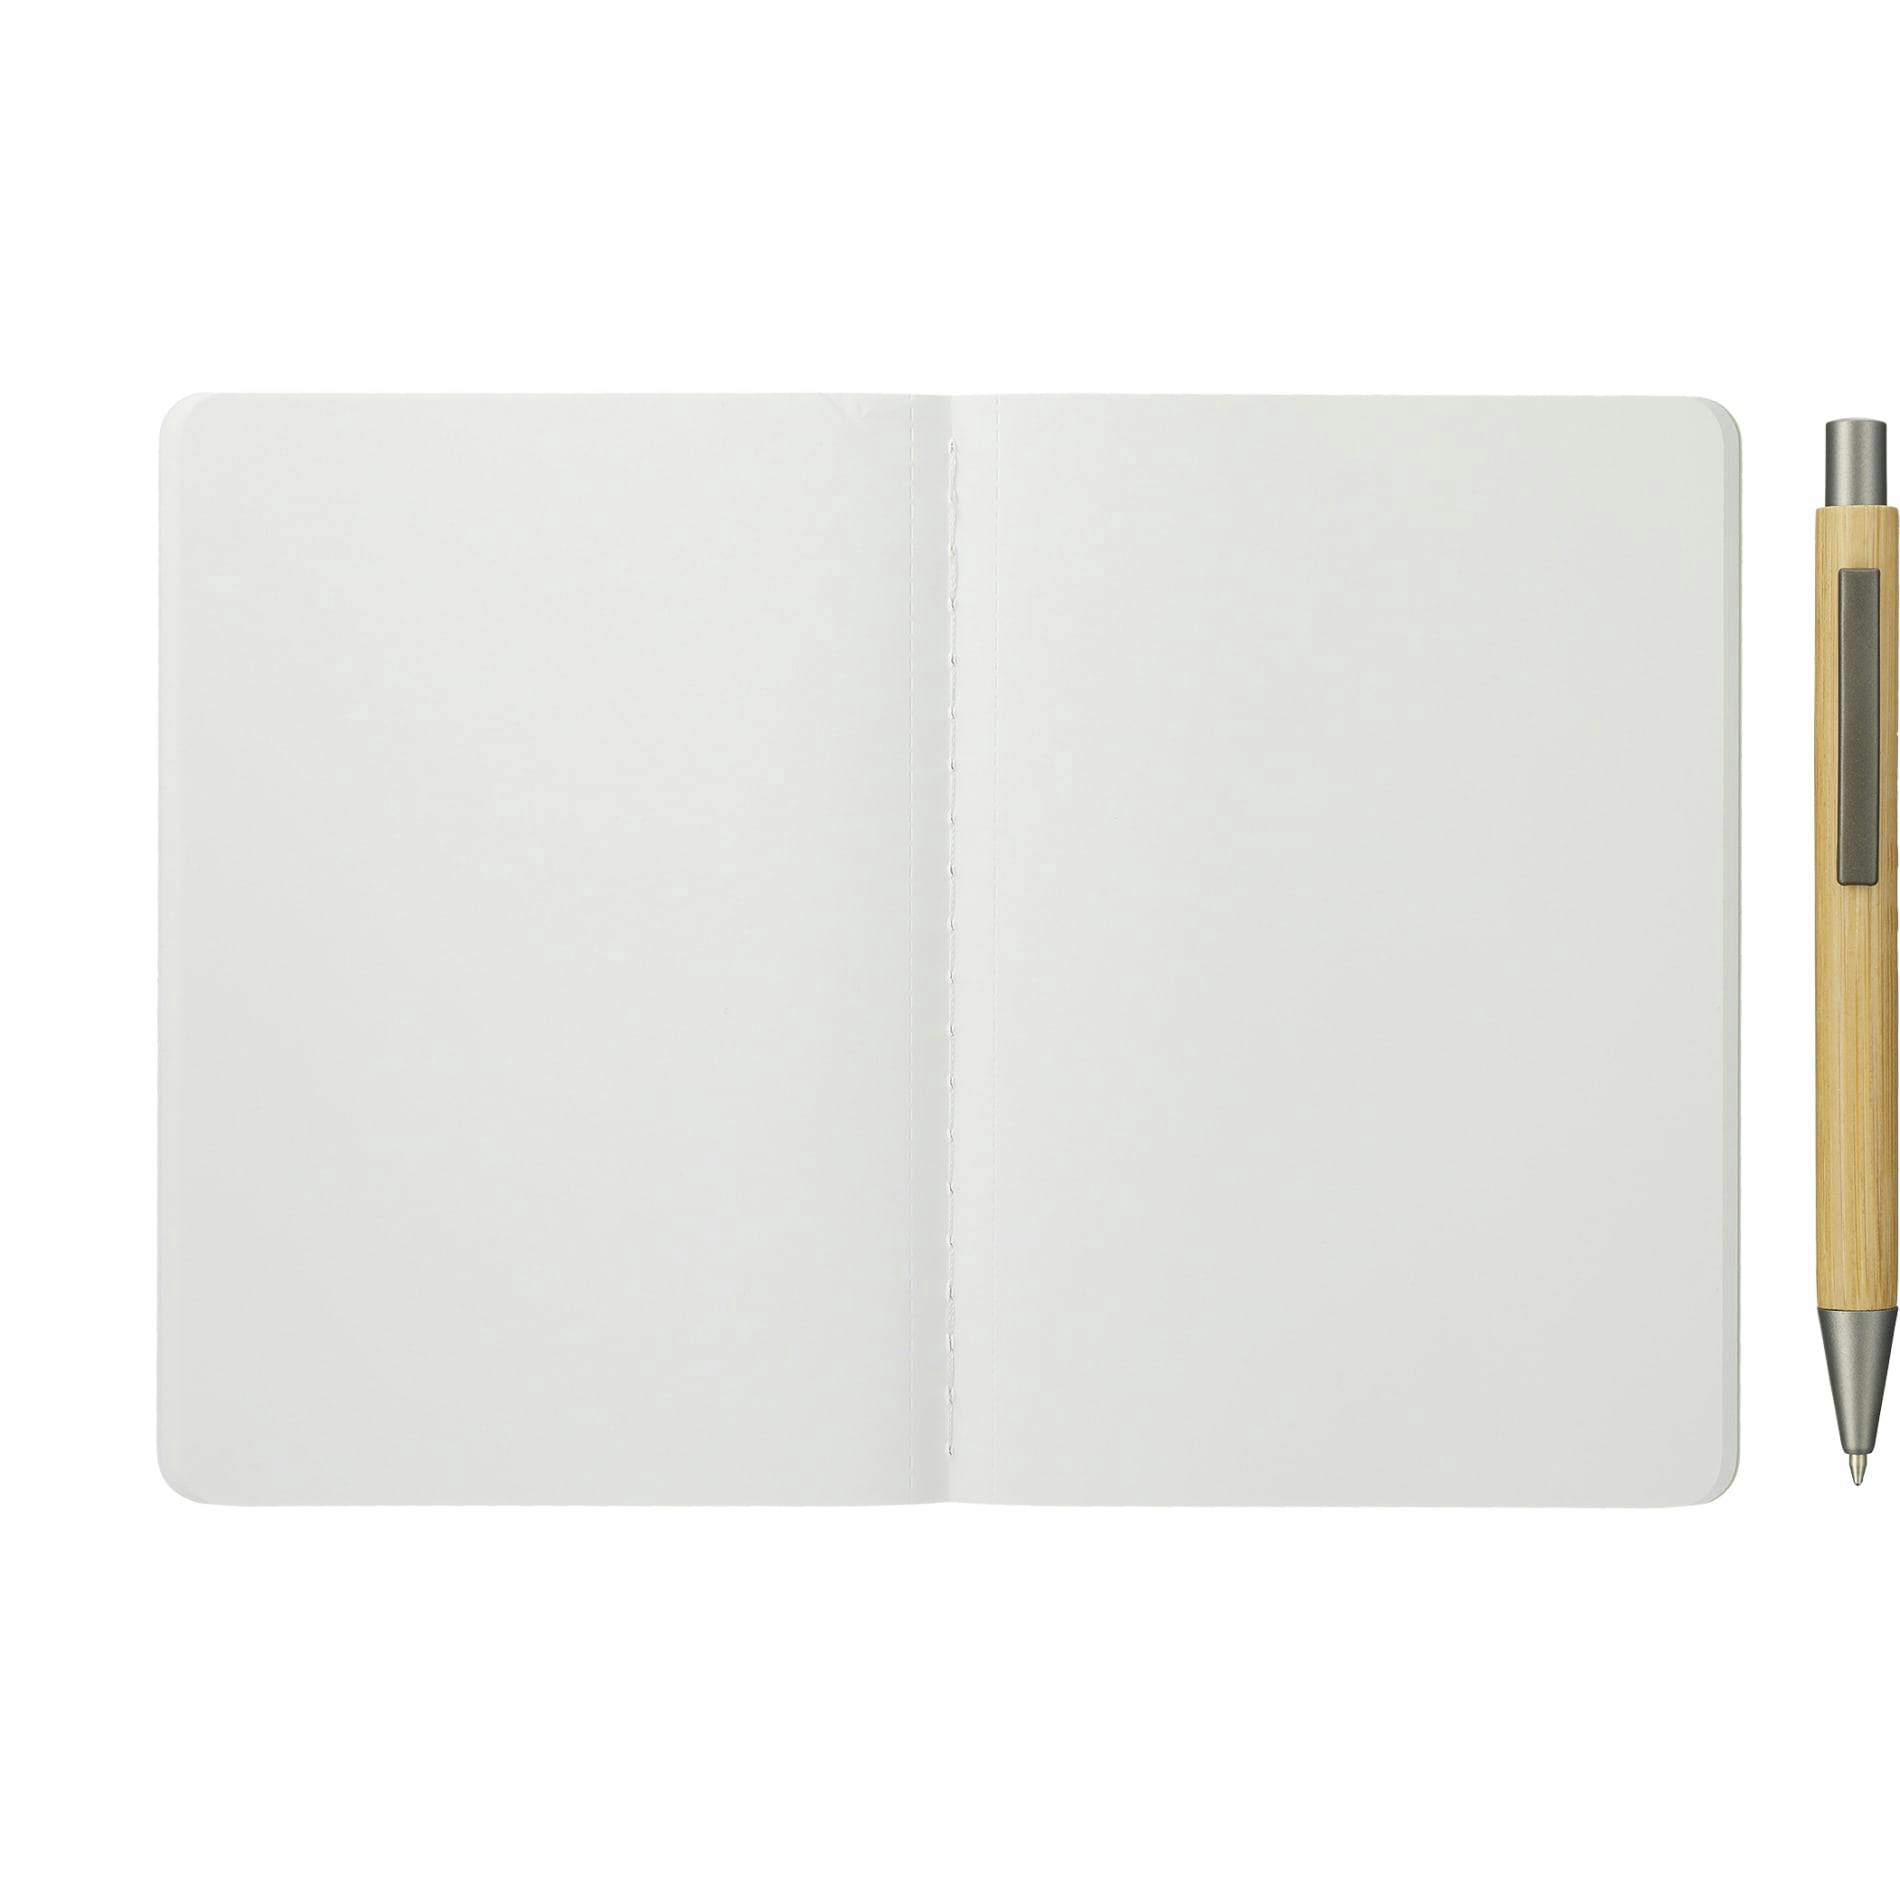 Karst Pocket Stone Paper Notebook - additional Image 1